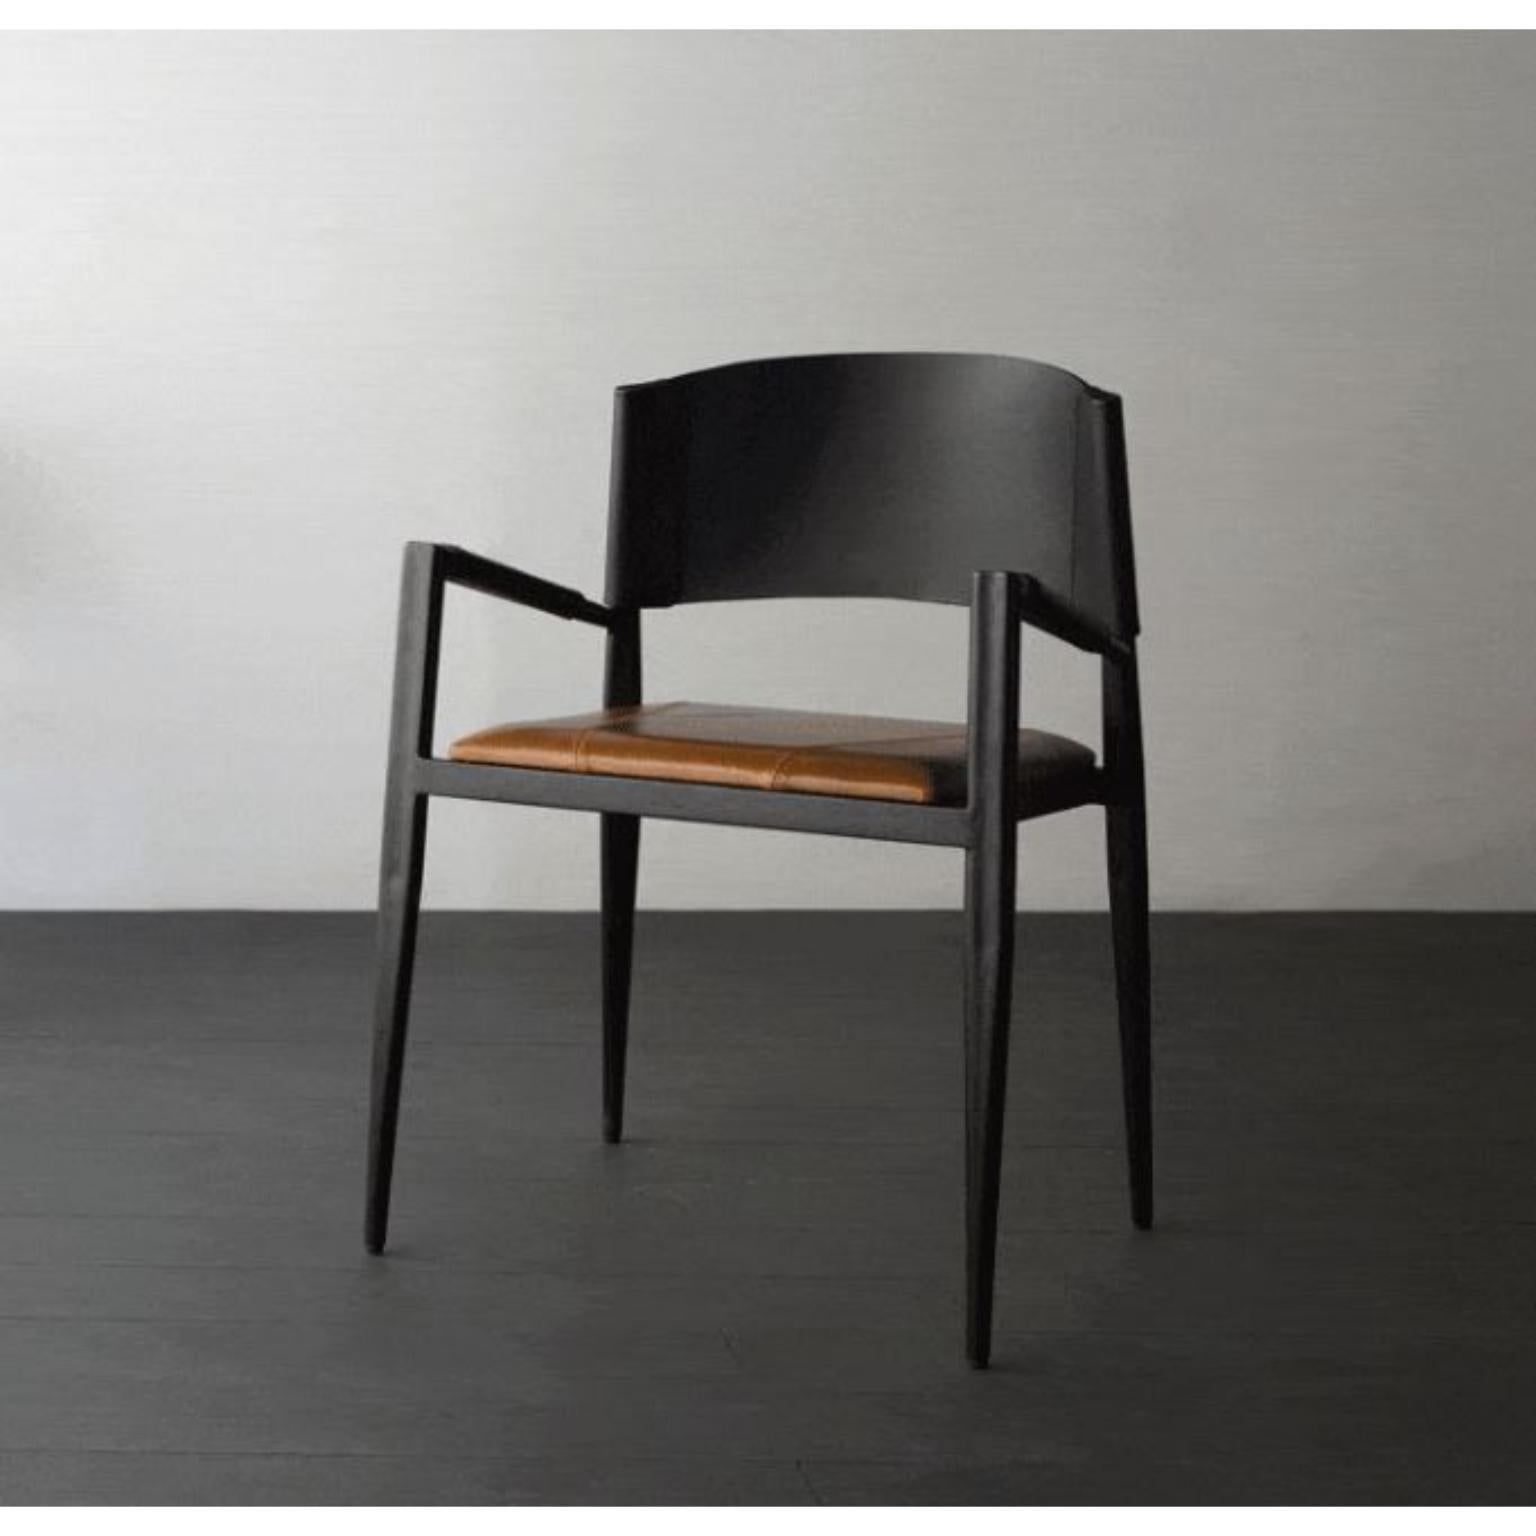 Ale-Stuhl mit Armlehnen von Doimo Brasil
Abmessungen: B 56 x T 55 x H 78 cm 
MATERIALIEN: Metall, Naturleder mit gepolstertem Sitz.


Mit der Absicht, guten Geschmack und Persönlichkeit zu vermitteln, entschlüsselt Doimo Trends und folgt der